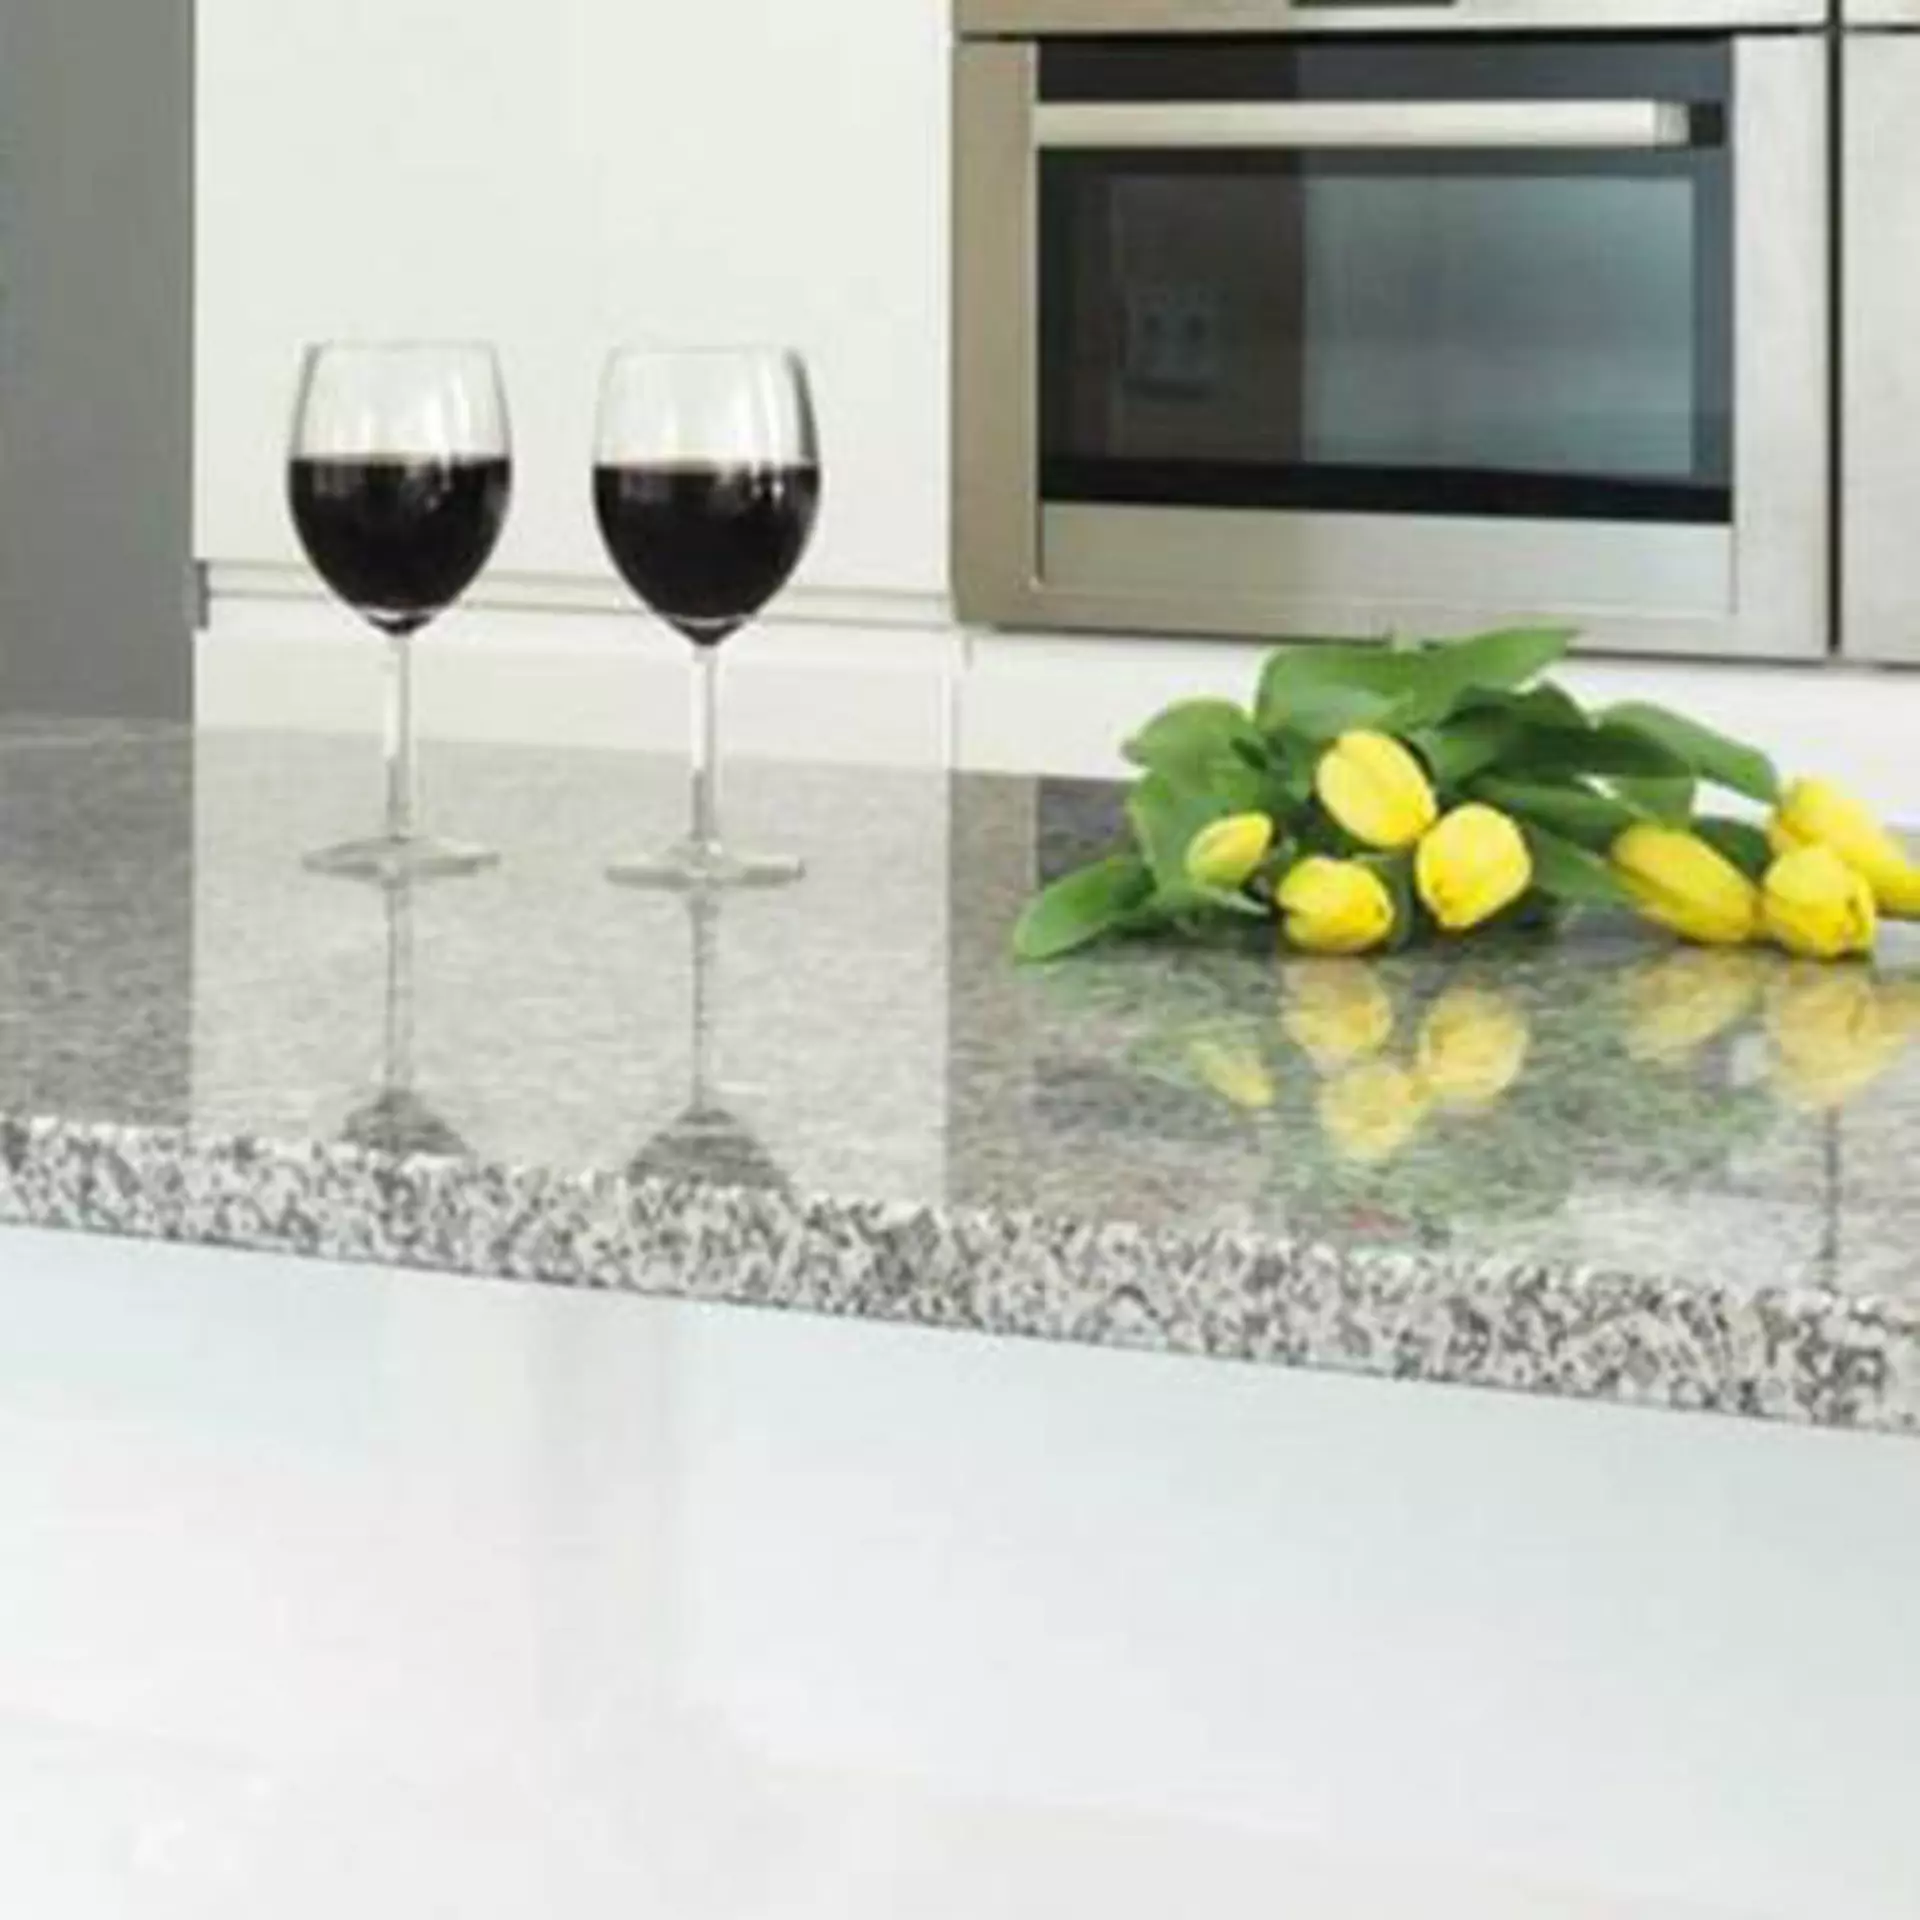 Milieubild zu Arbeitsplatten aus Naturstein. Zu sehen ist eine Küchenzeile mit grau gesprenkeltem Naturstein. Darauf stehen zwei Gläser Rotwein und ein Bund gelber Tulpen.